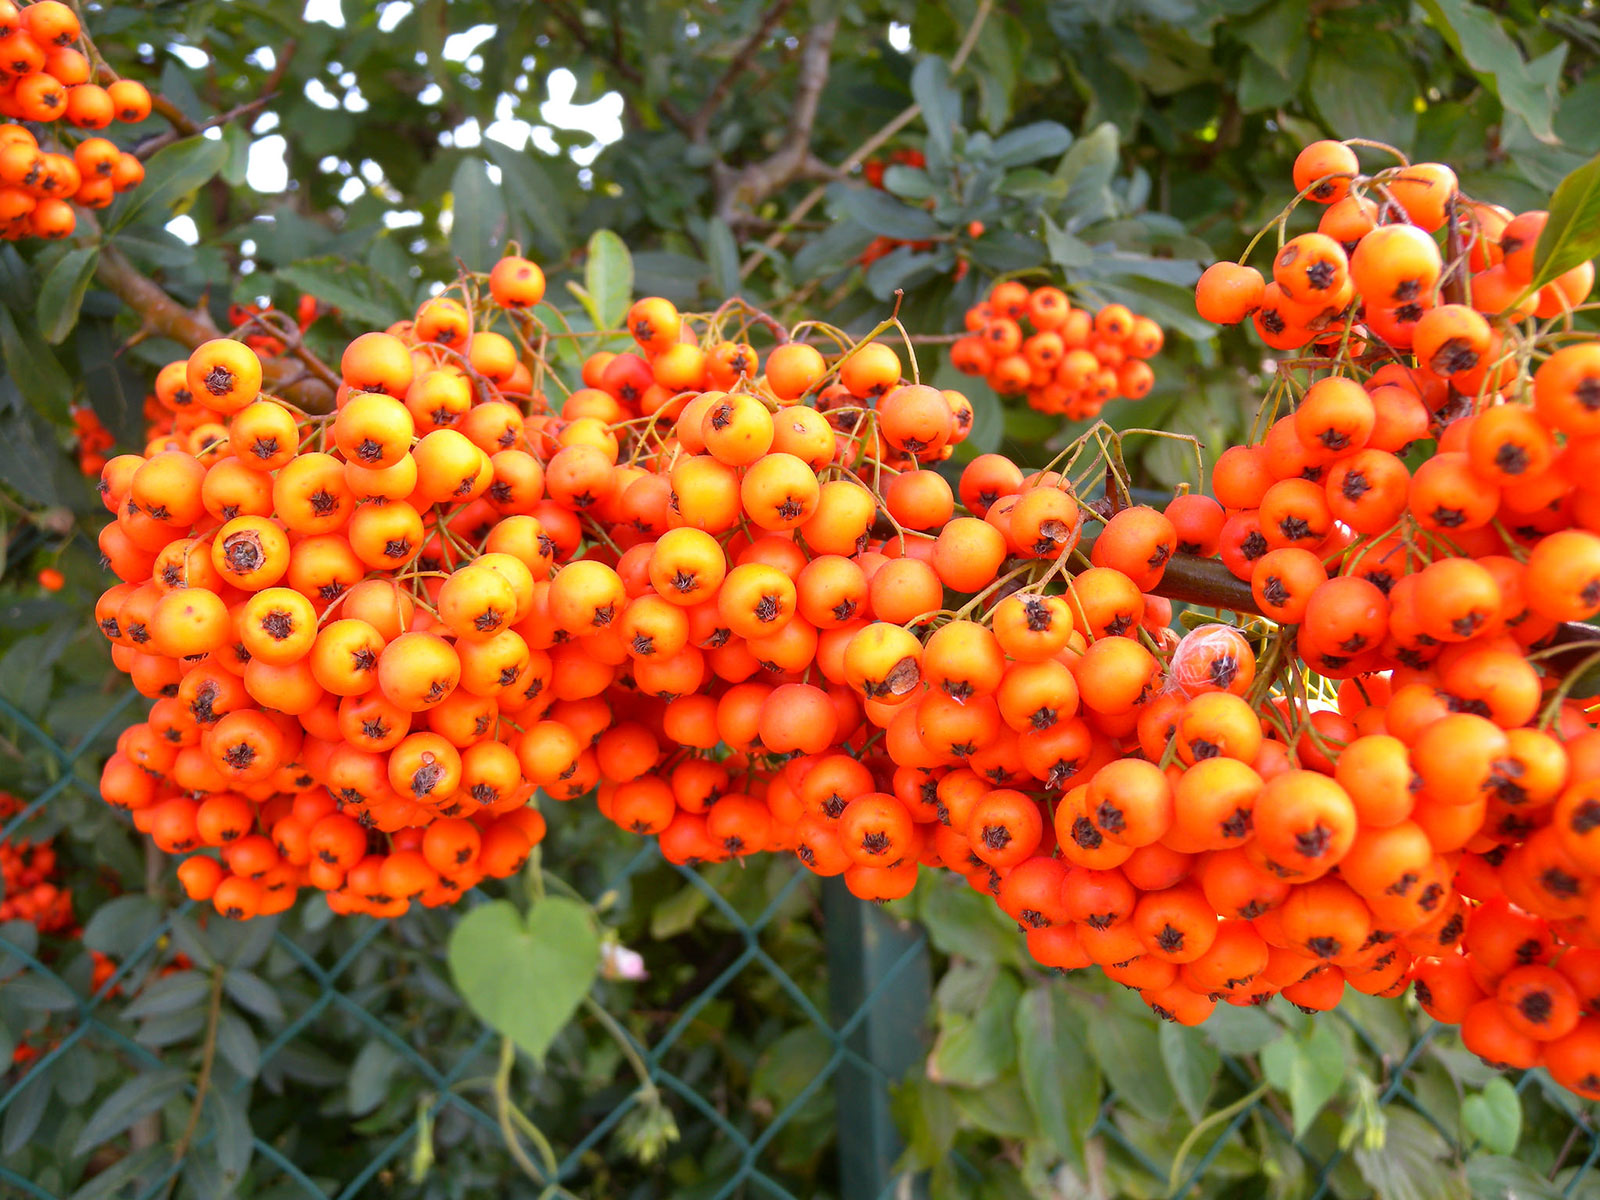 Buisson Ardent - Fruits en cours de maturation. Crédits : Tauralbus - Flickr